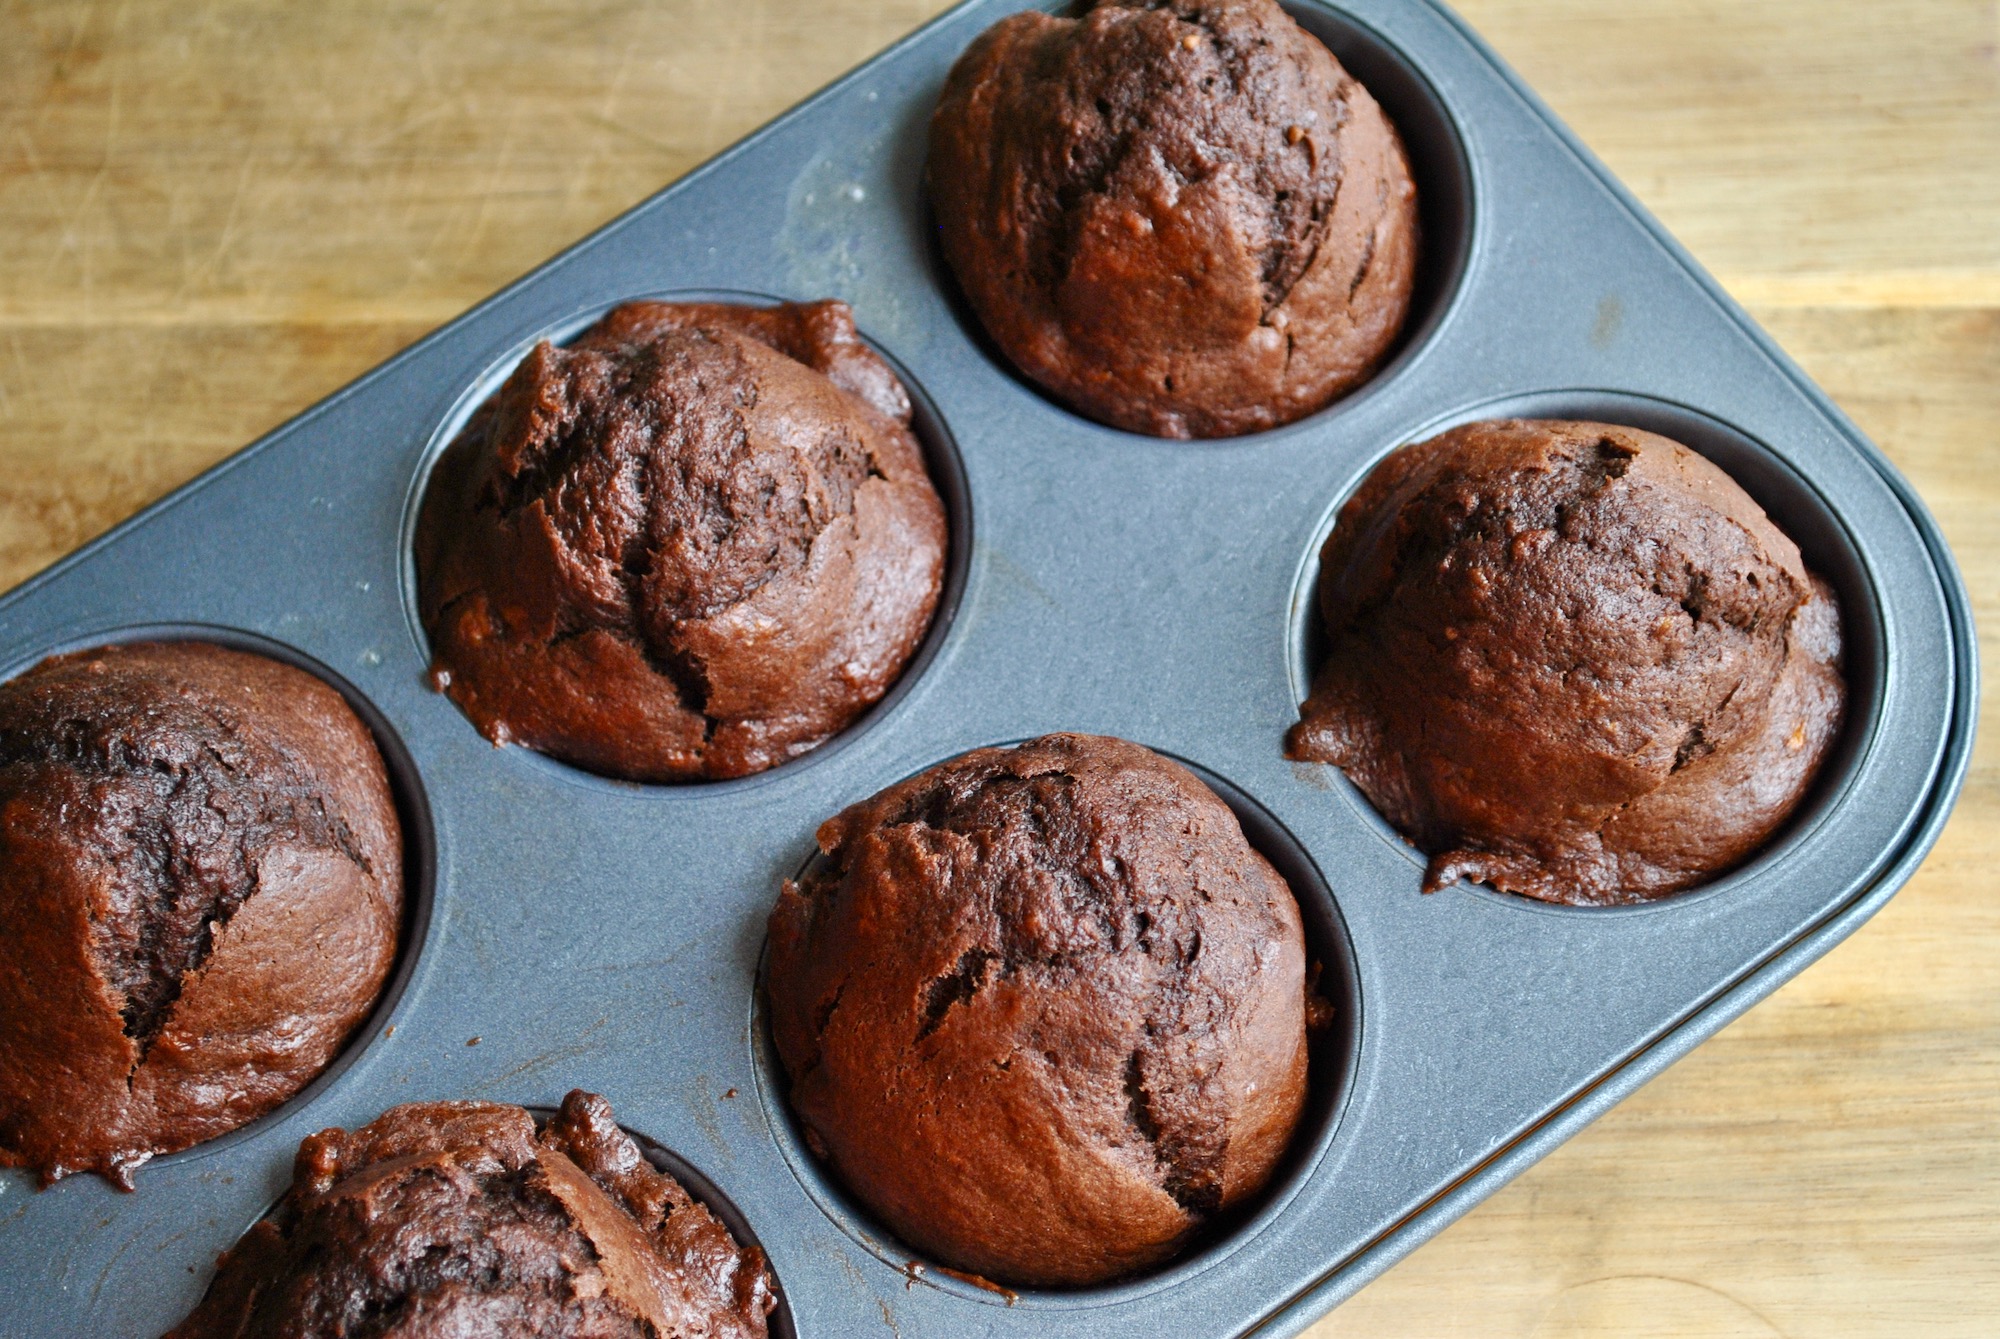 banana chocolate muffins recipe - 1